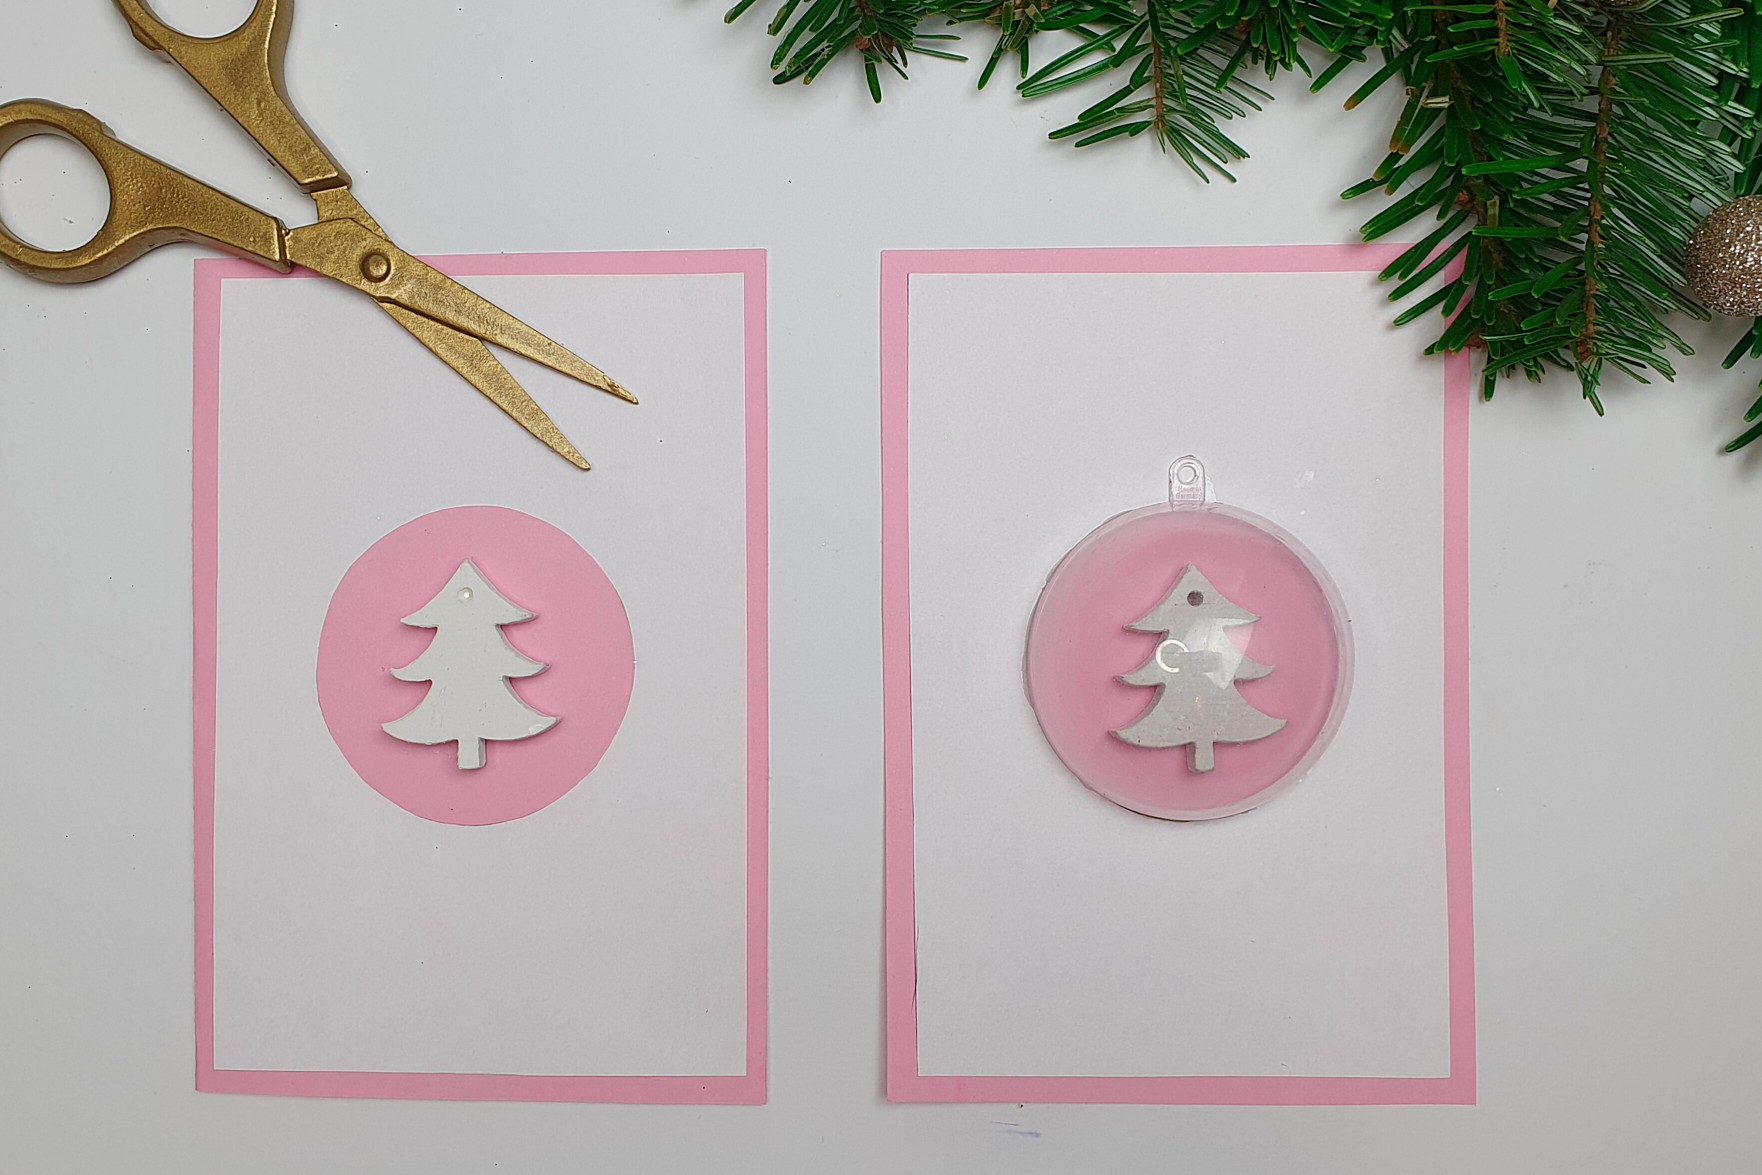 Die Weihnachtskarte wird mit Tannenbäume und einer Kugel dekoriert